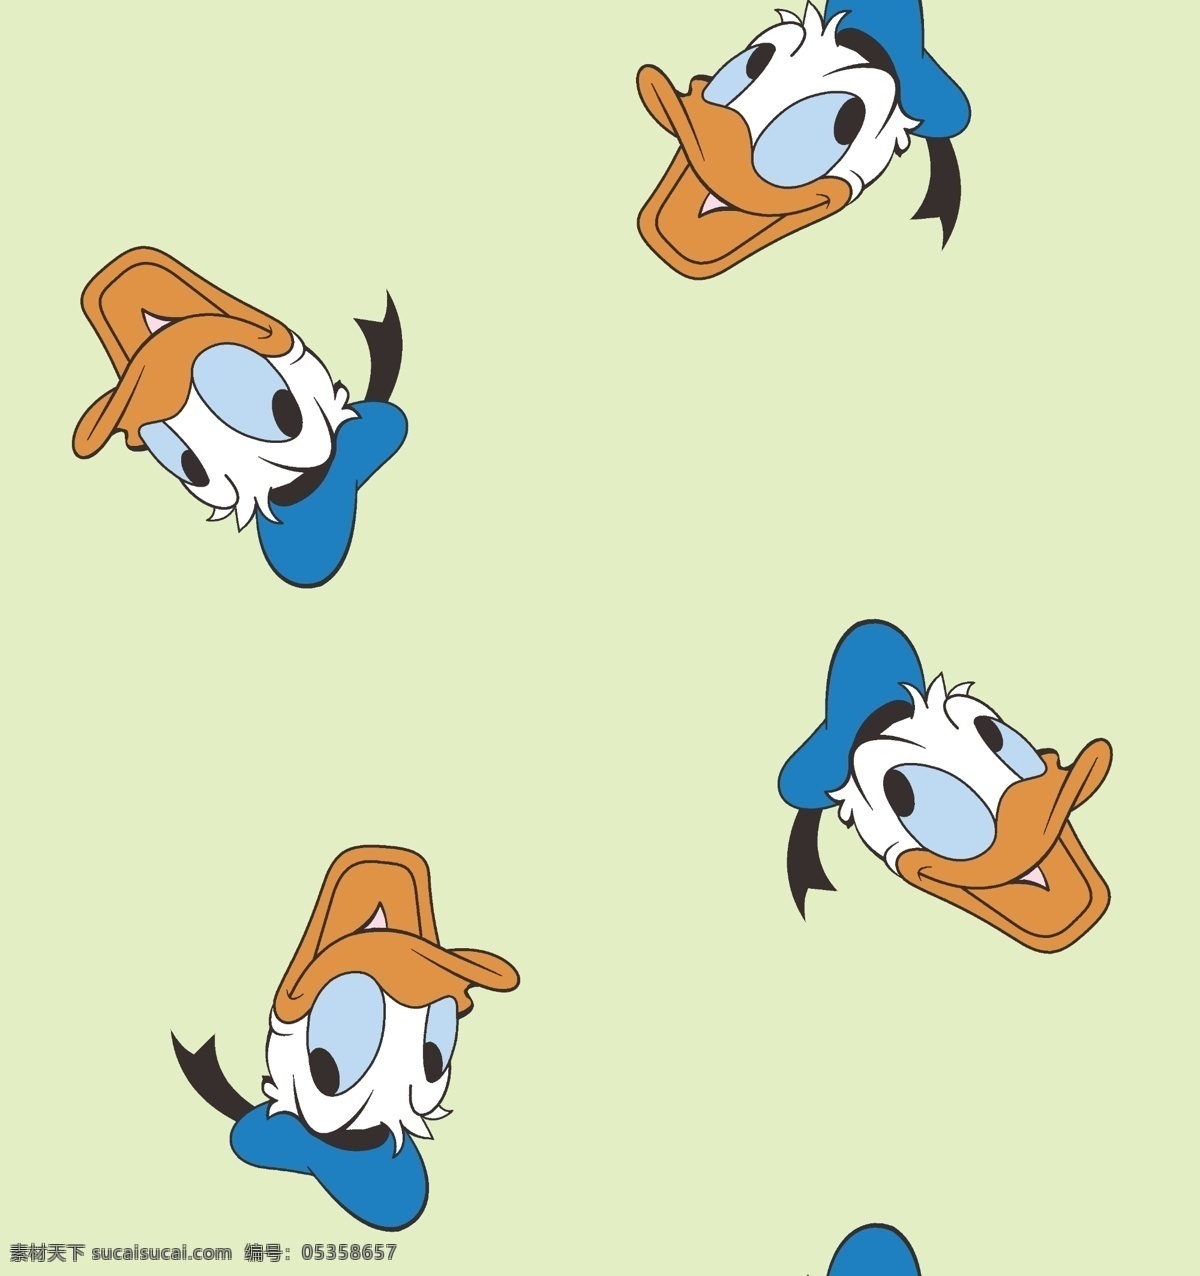 唐老鸭矢量图 鸭子ai 快乐的鸭子 鸭子海报素材 彩色鸭子 鸭子海报 鸭子创意主 动漫鸭子 卡通鸭子图 动漫卡通人物 动漫动画 动漫人物